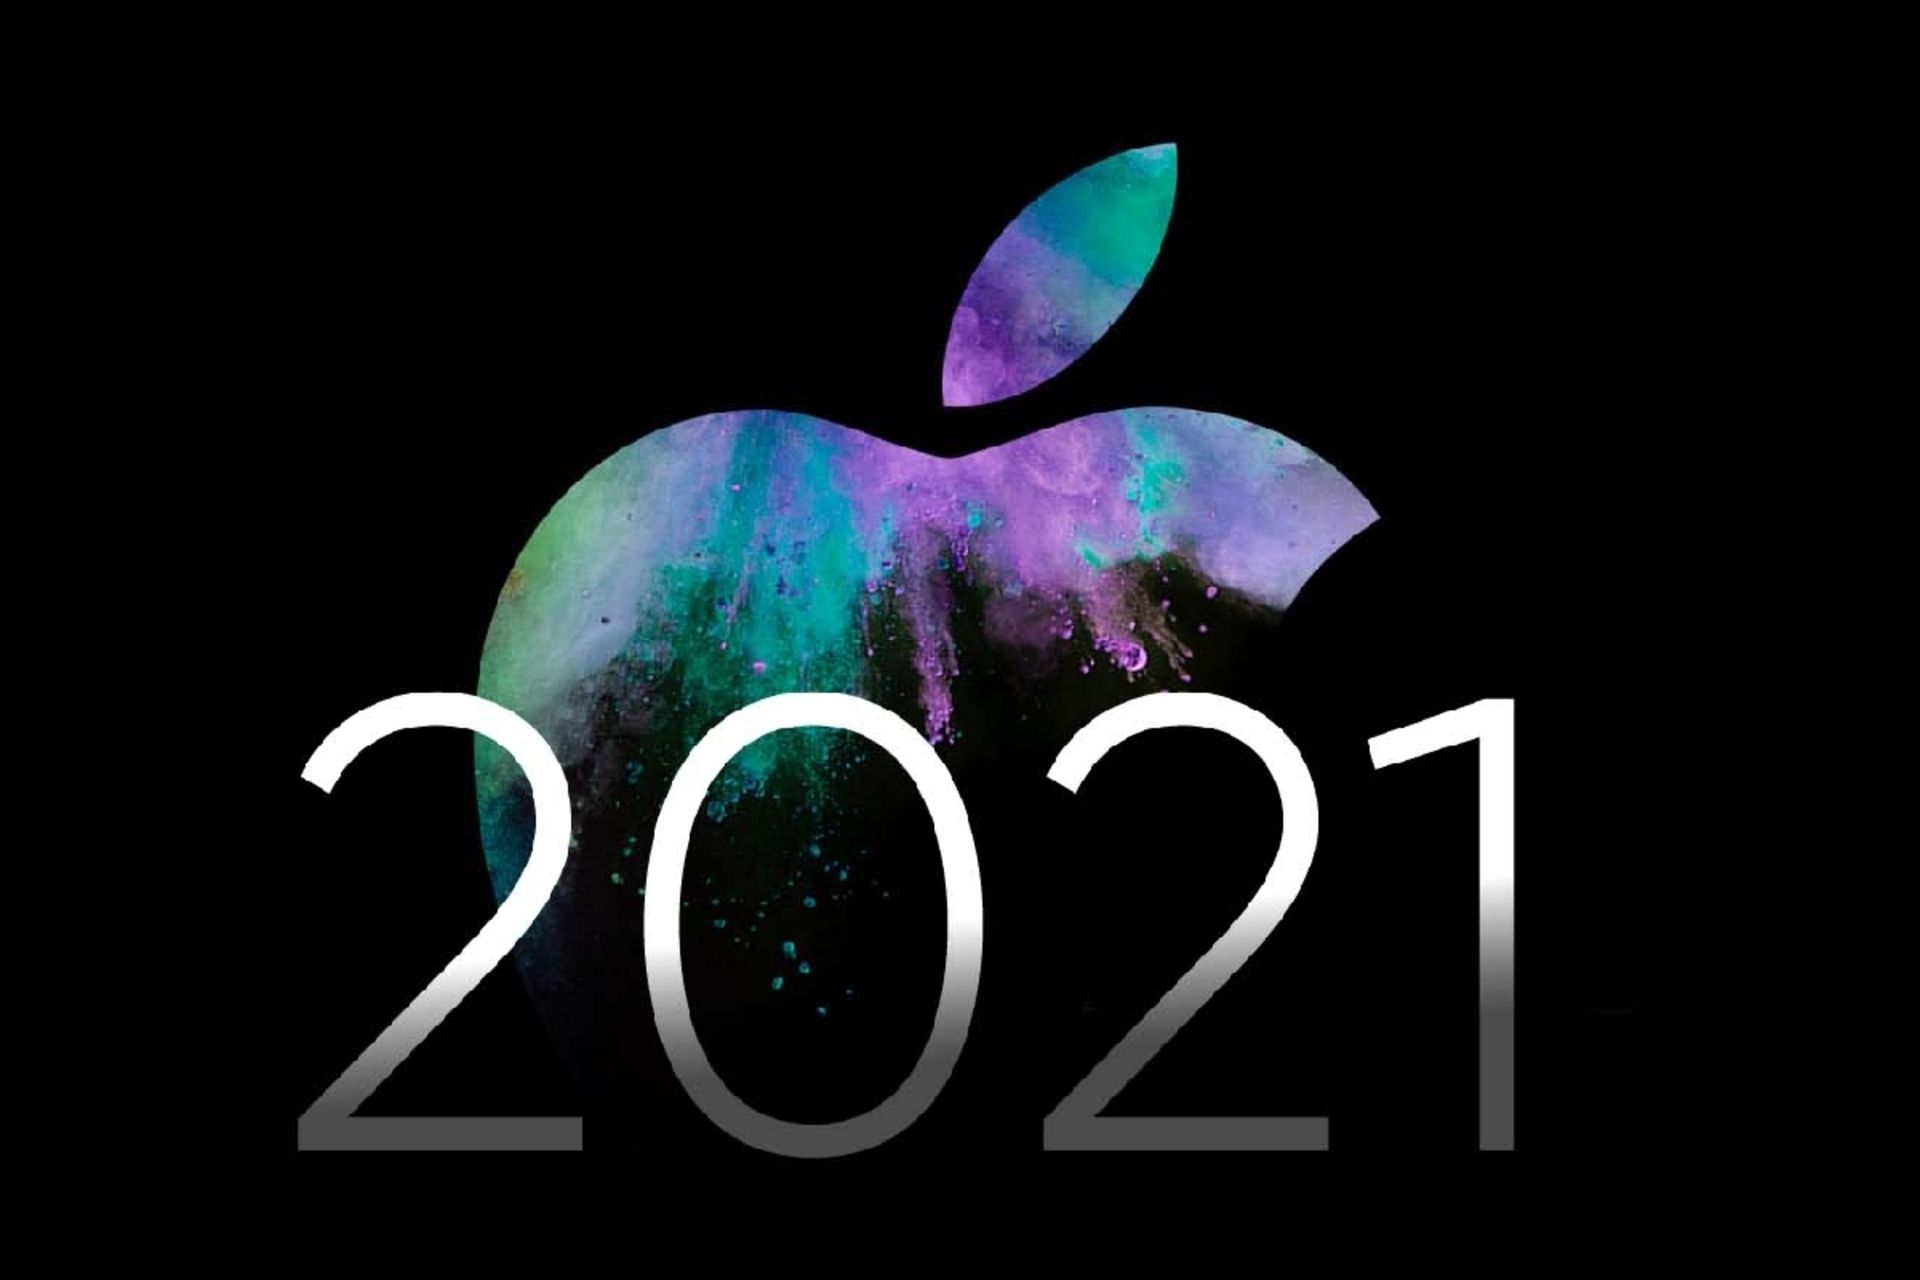 لوگو اپل و فونت ۲۰۲۱ / مفهومی از رویدادهای اپل در سال ۲۰۲۱